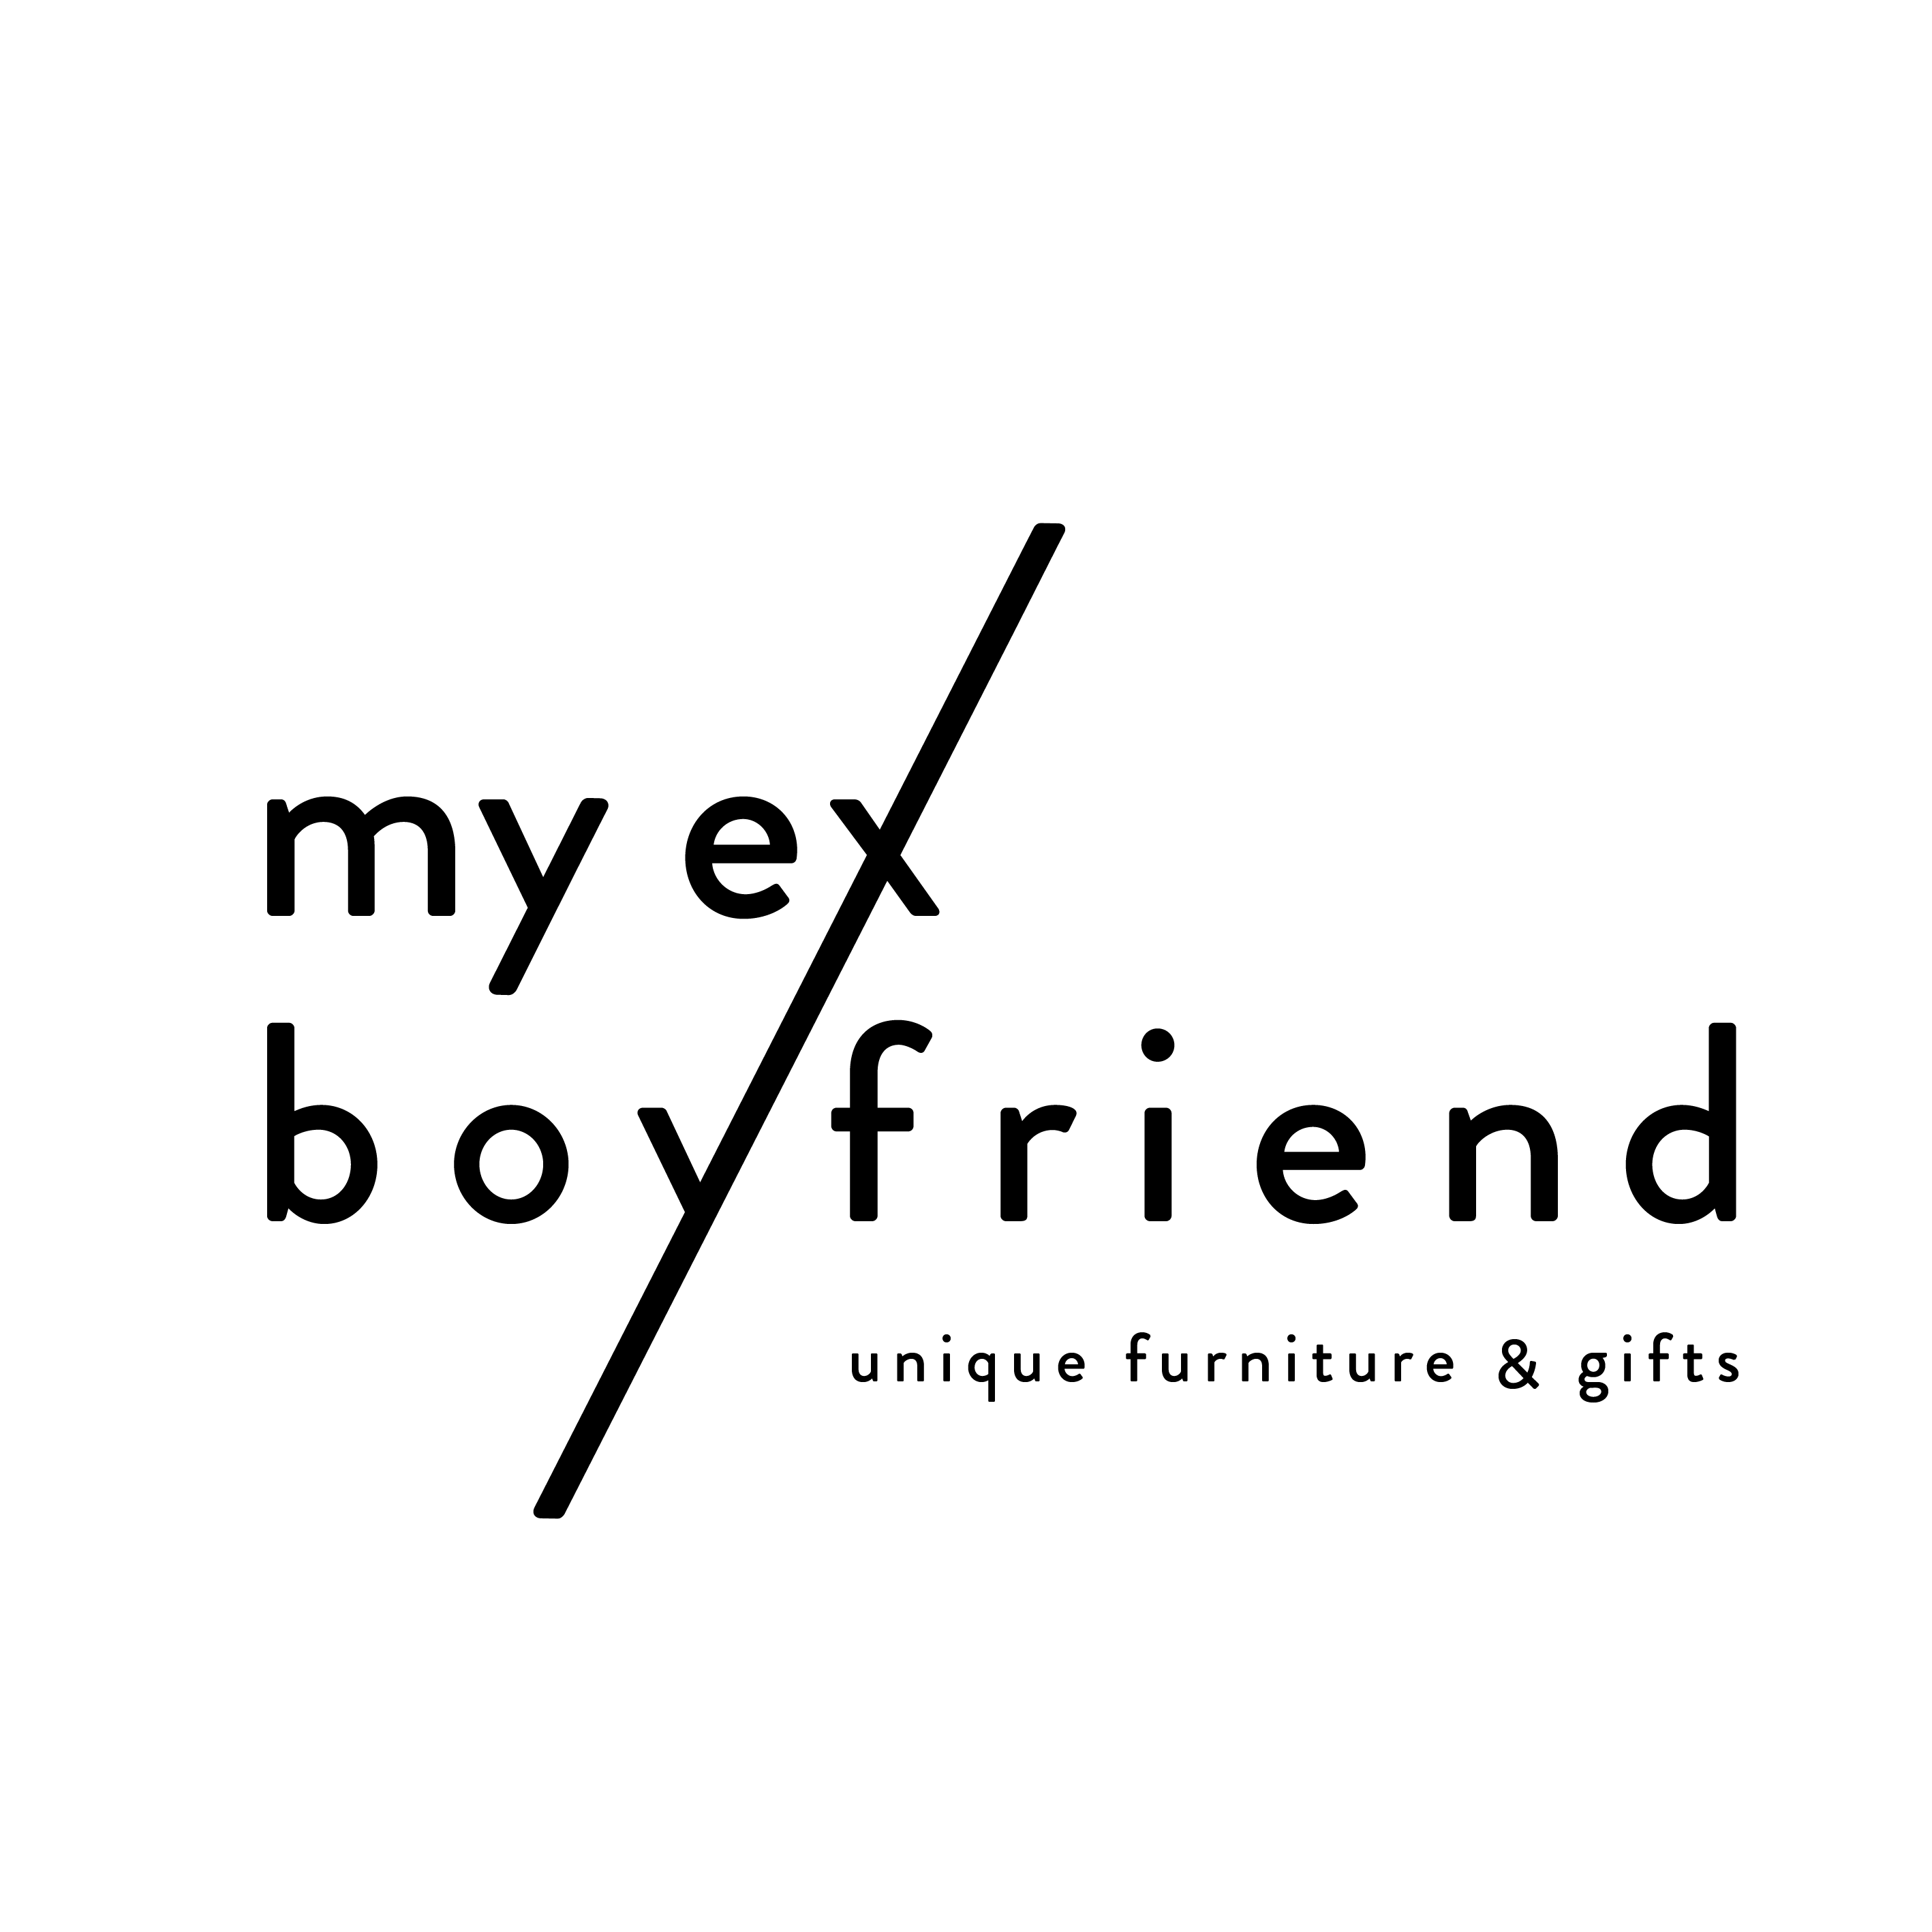 The Boyfriend Logo - My Ex Boyfriend